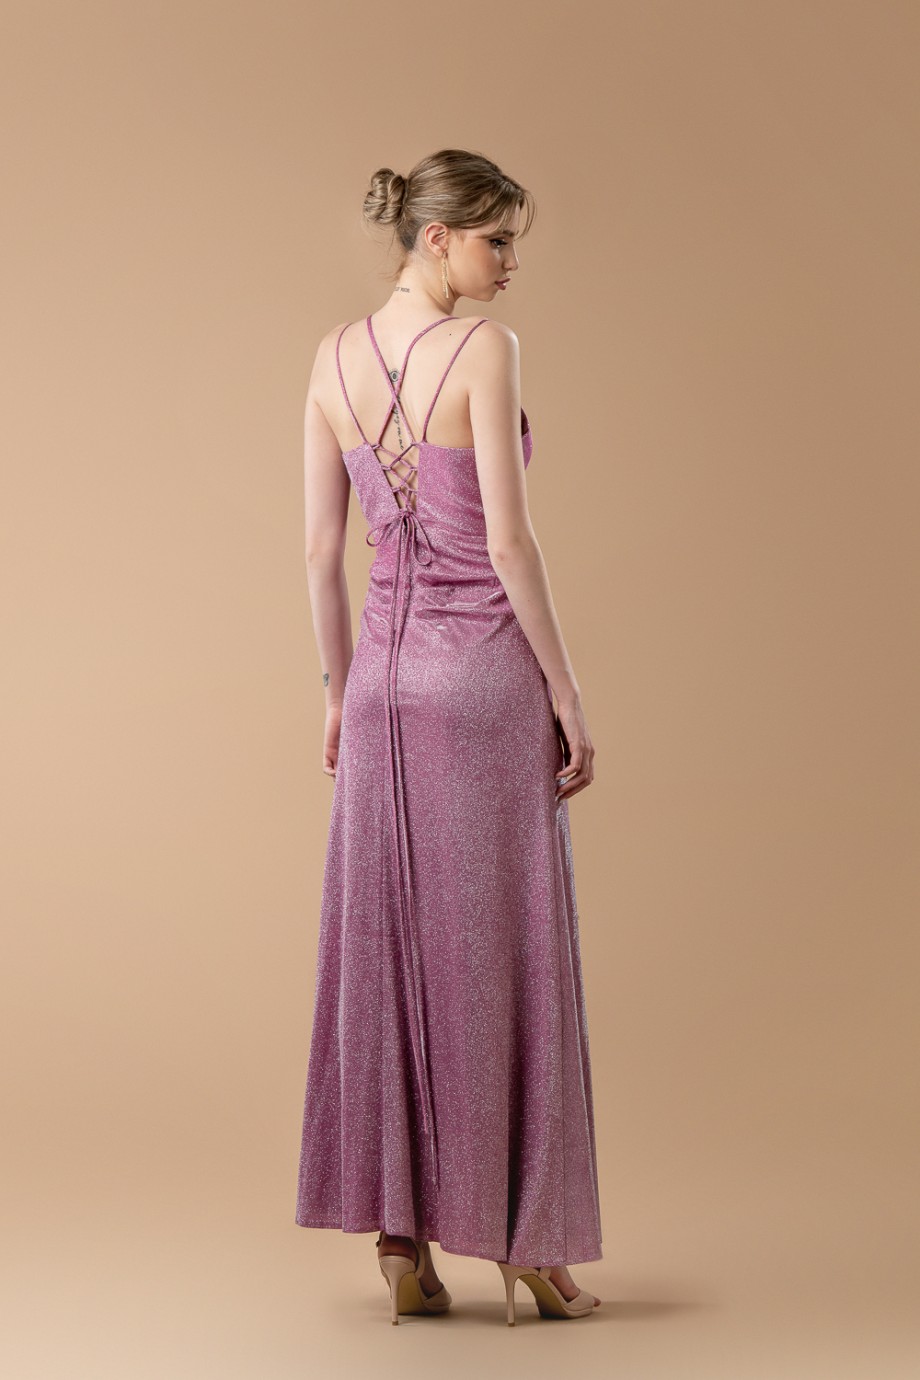 Μακρύ εφαρμοστό ροζ φόρεμα με glitter και ντεκολτέ